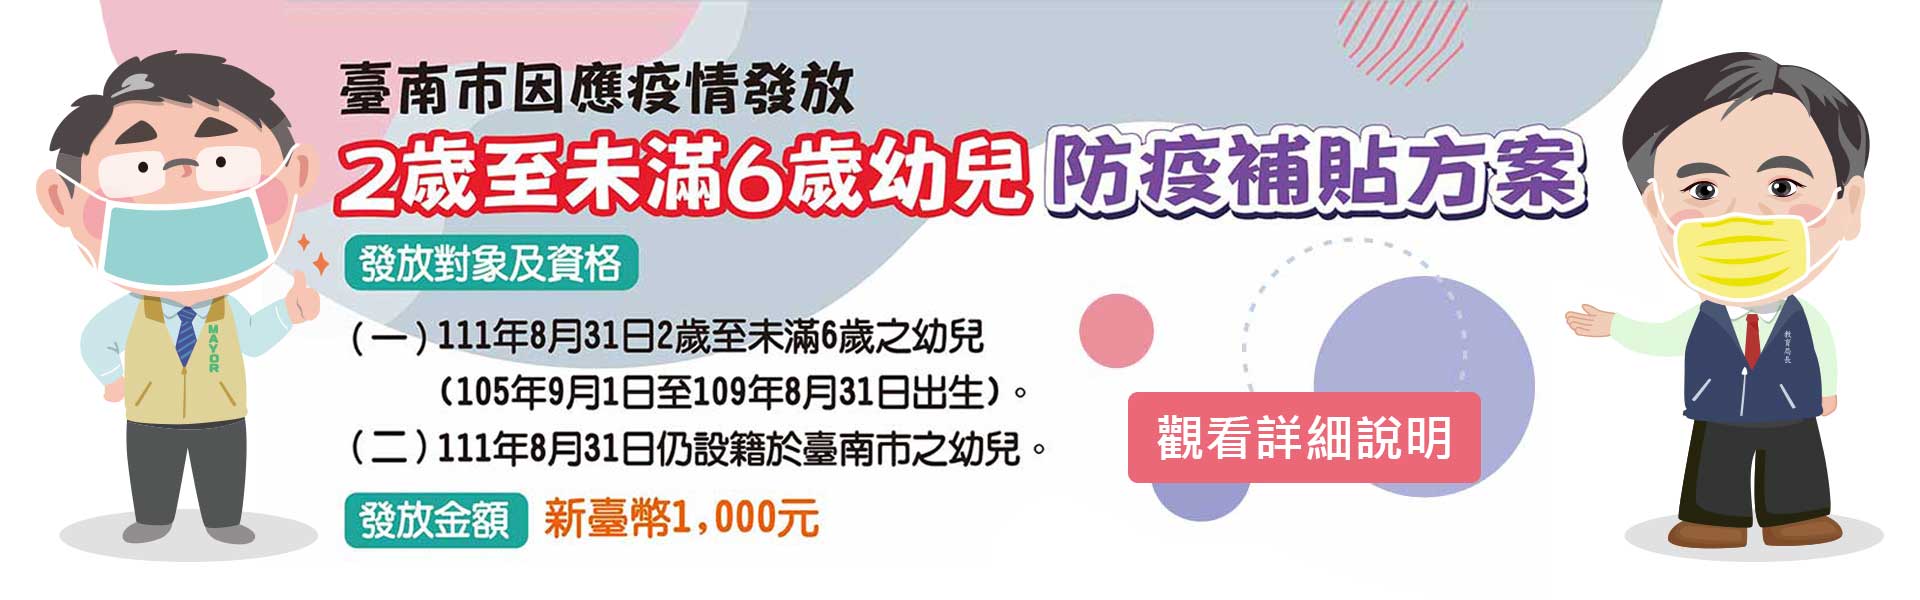 臺南市因應疫情發放2歲至未滿6歲幼兒防疫補貼方案